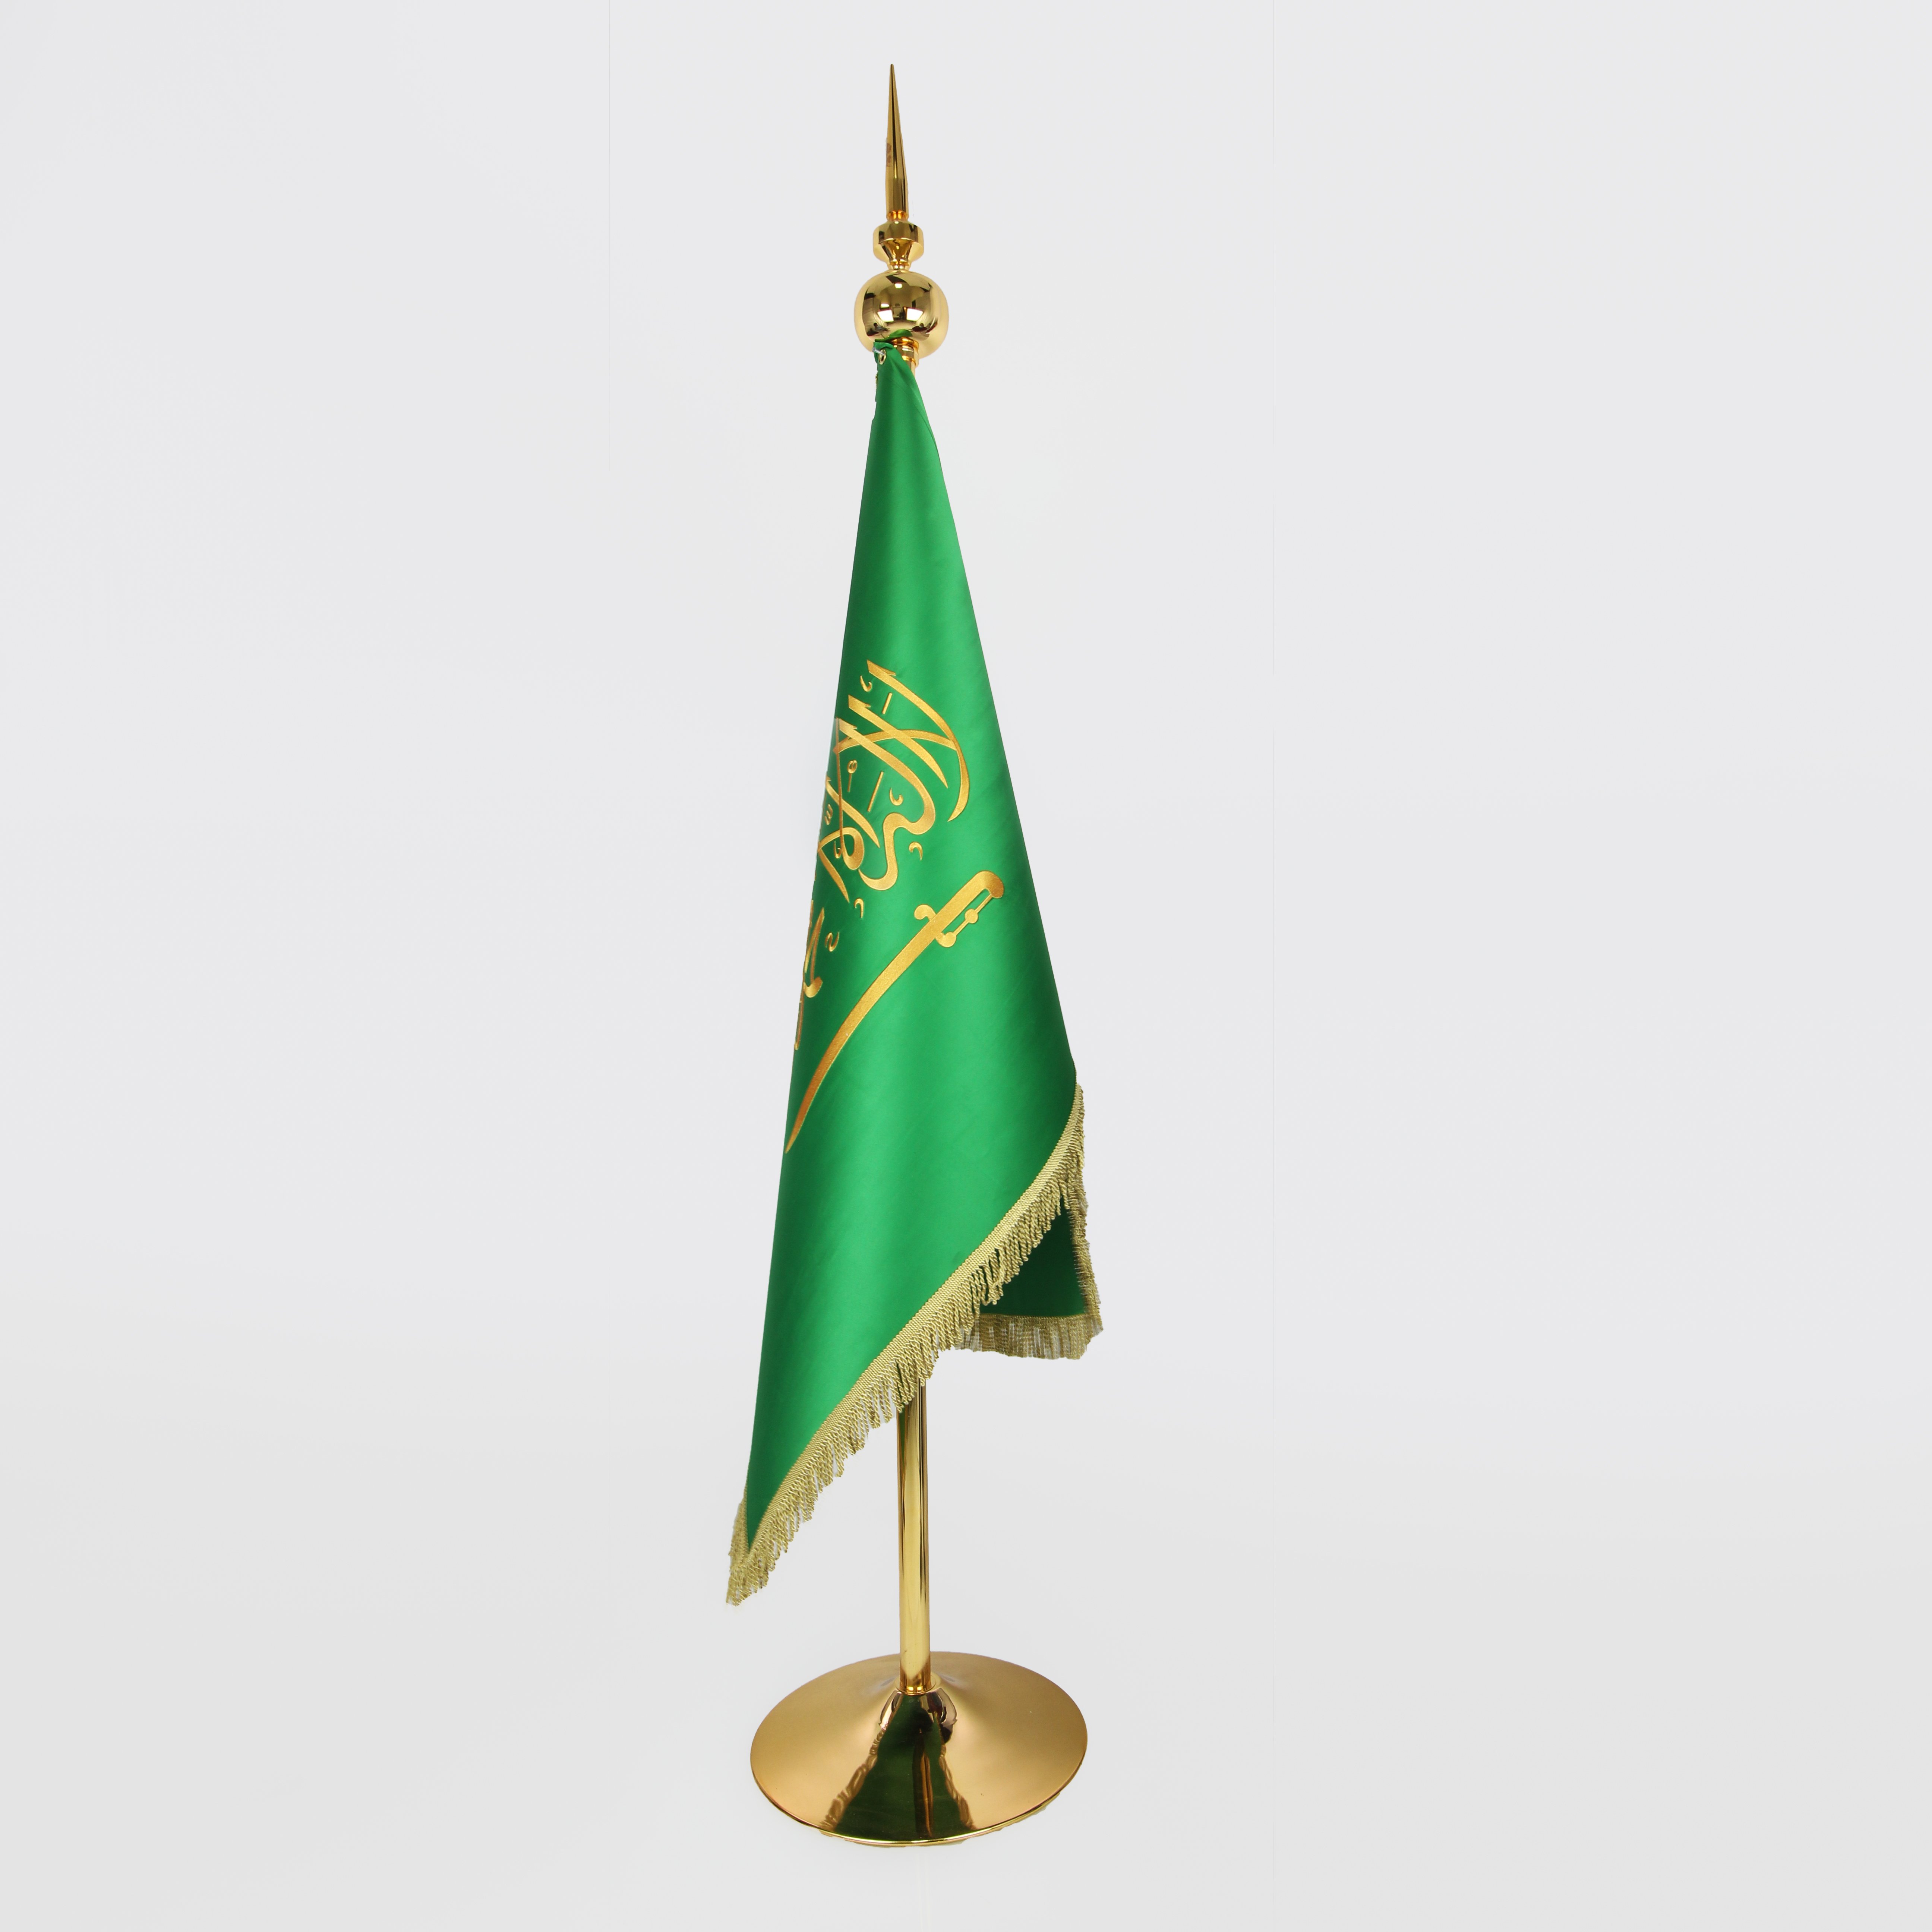 علم السعوديه